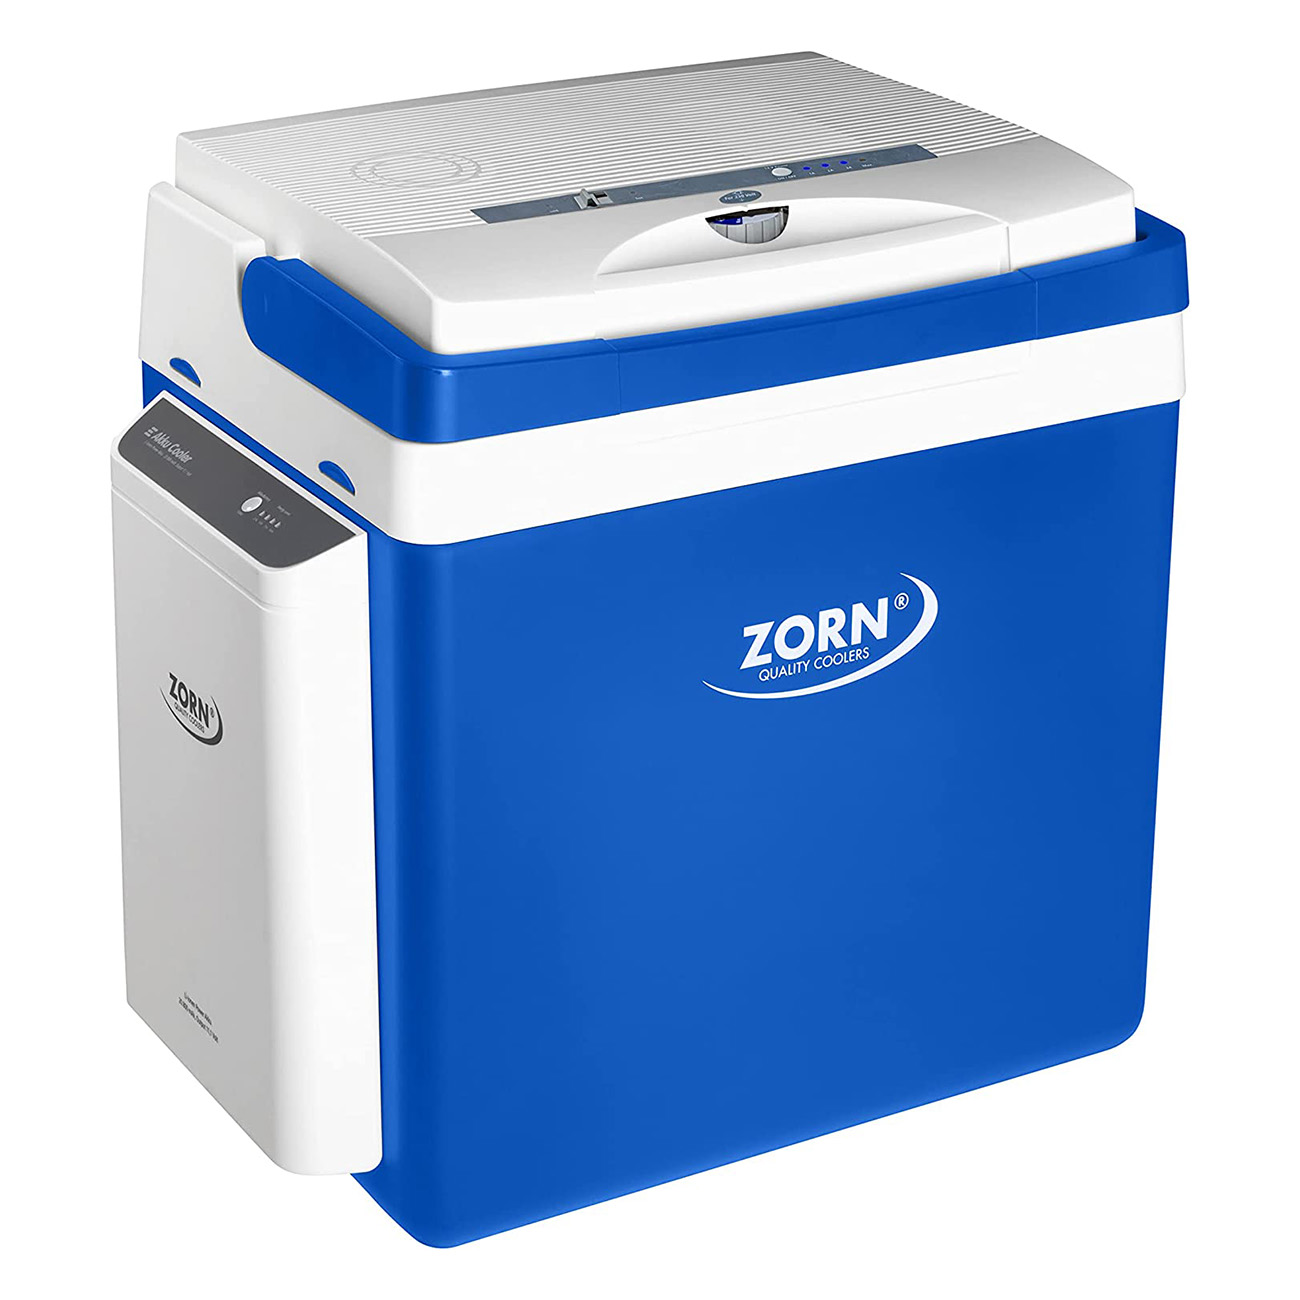 Zorn ZE26 12/230V LNE blau/weiß mit Akku | 25 Litern Fassungsvermögen | 12 V Anschluss  | Regulierbare Temperatur  | EPS-Isolierung | Mobile Kühlbox | Robust und Stoßfest